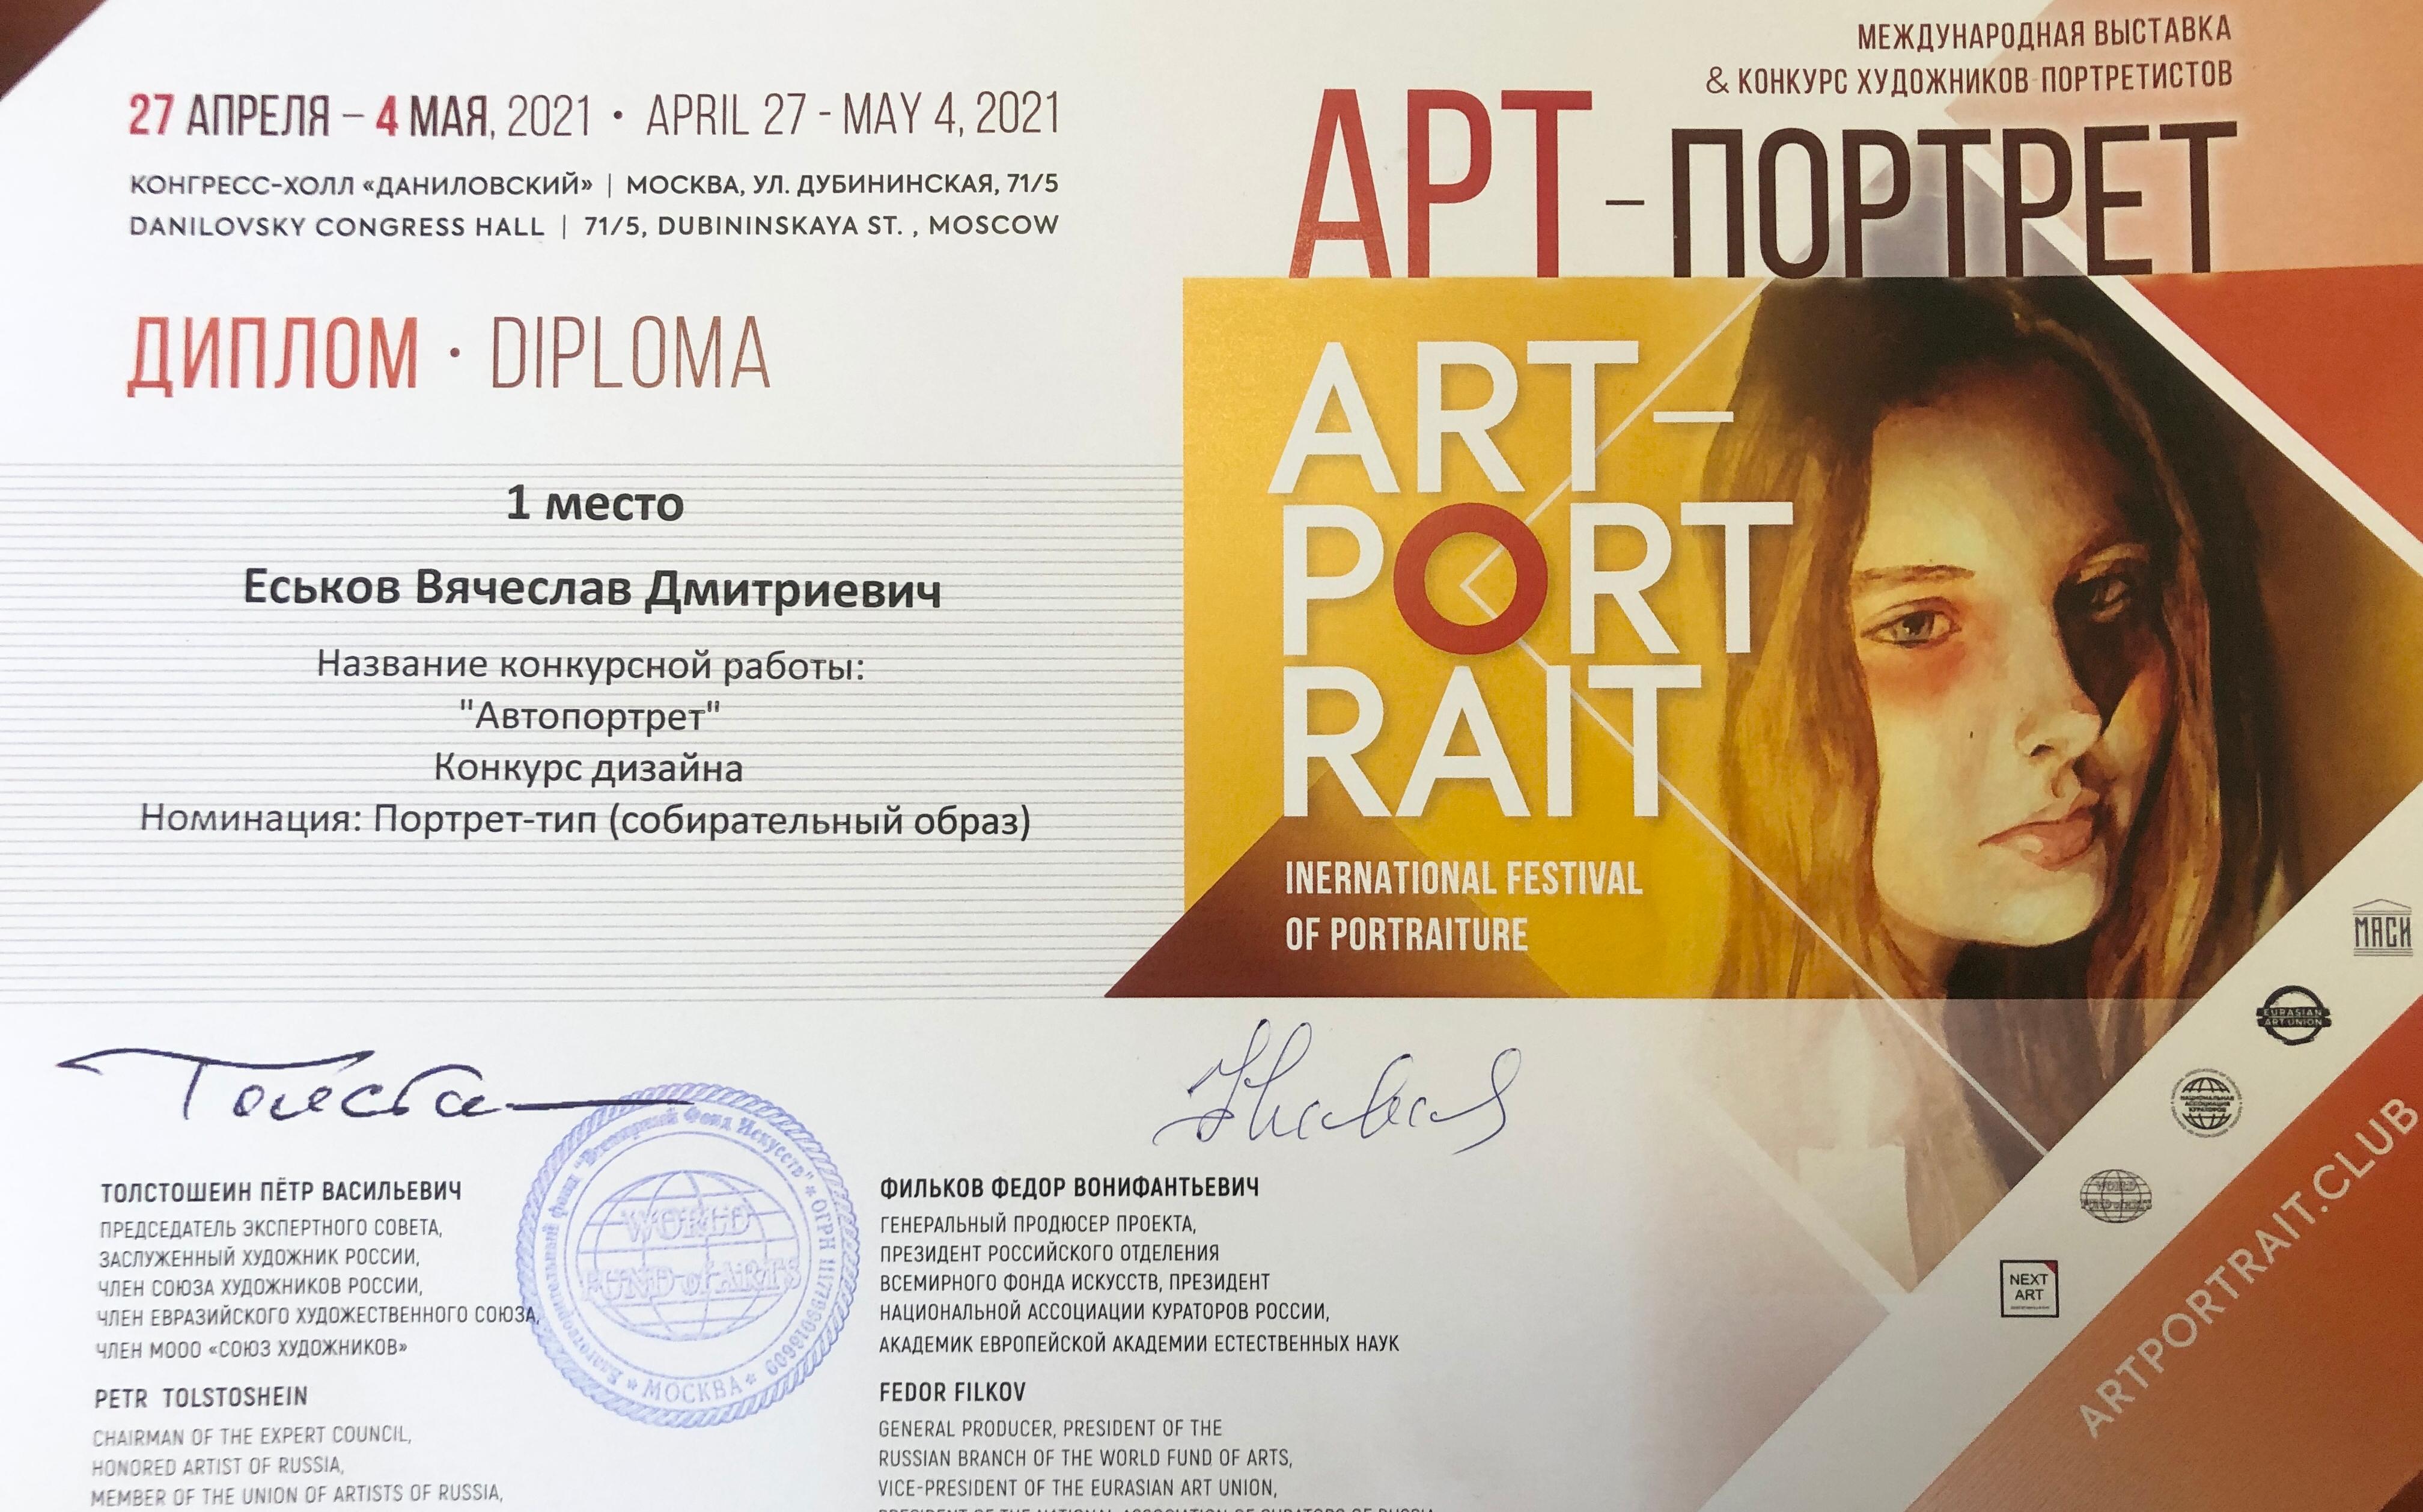 ФОТО к новости: Доцент ИИ НГПУ достойно представил вуз на Российской неделе искусств